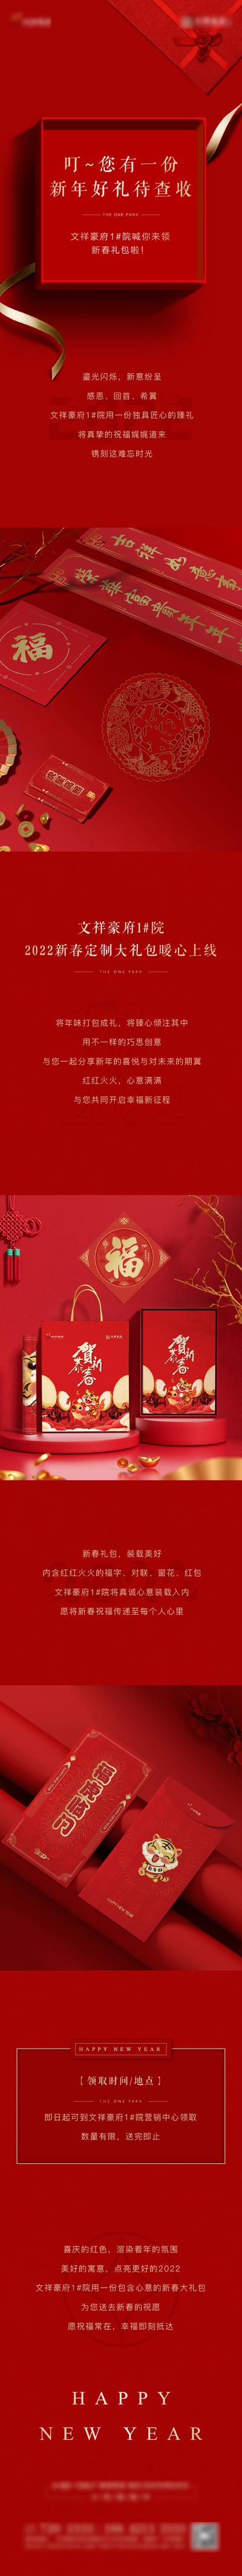 南门网 海报 长图 房地产 公历节日 新年 元旦 春节 礼品